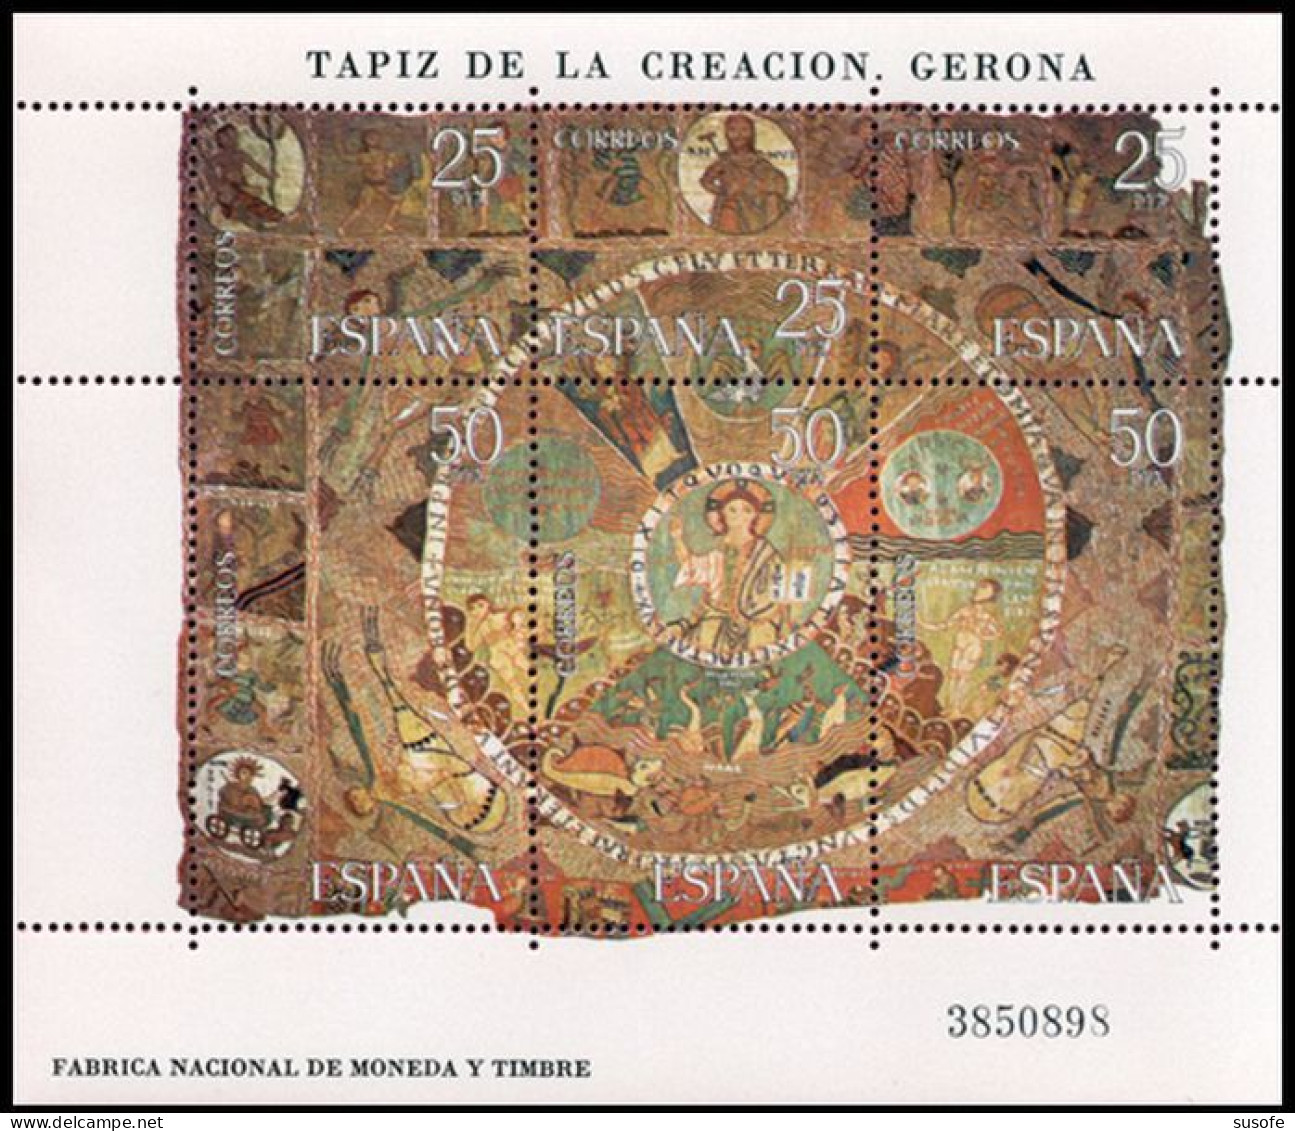 España 1980 Edifil 2591 Sellos ** HB Tapiz De La Creacion Gerona Michel BL22 Yvert BF28 Spain Stamps Timbres Espagne - Nuevos